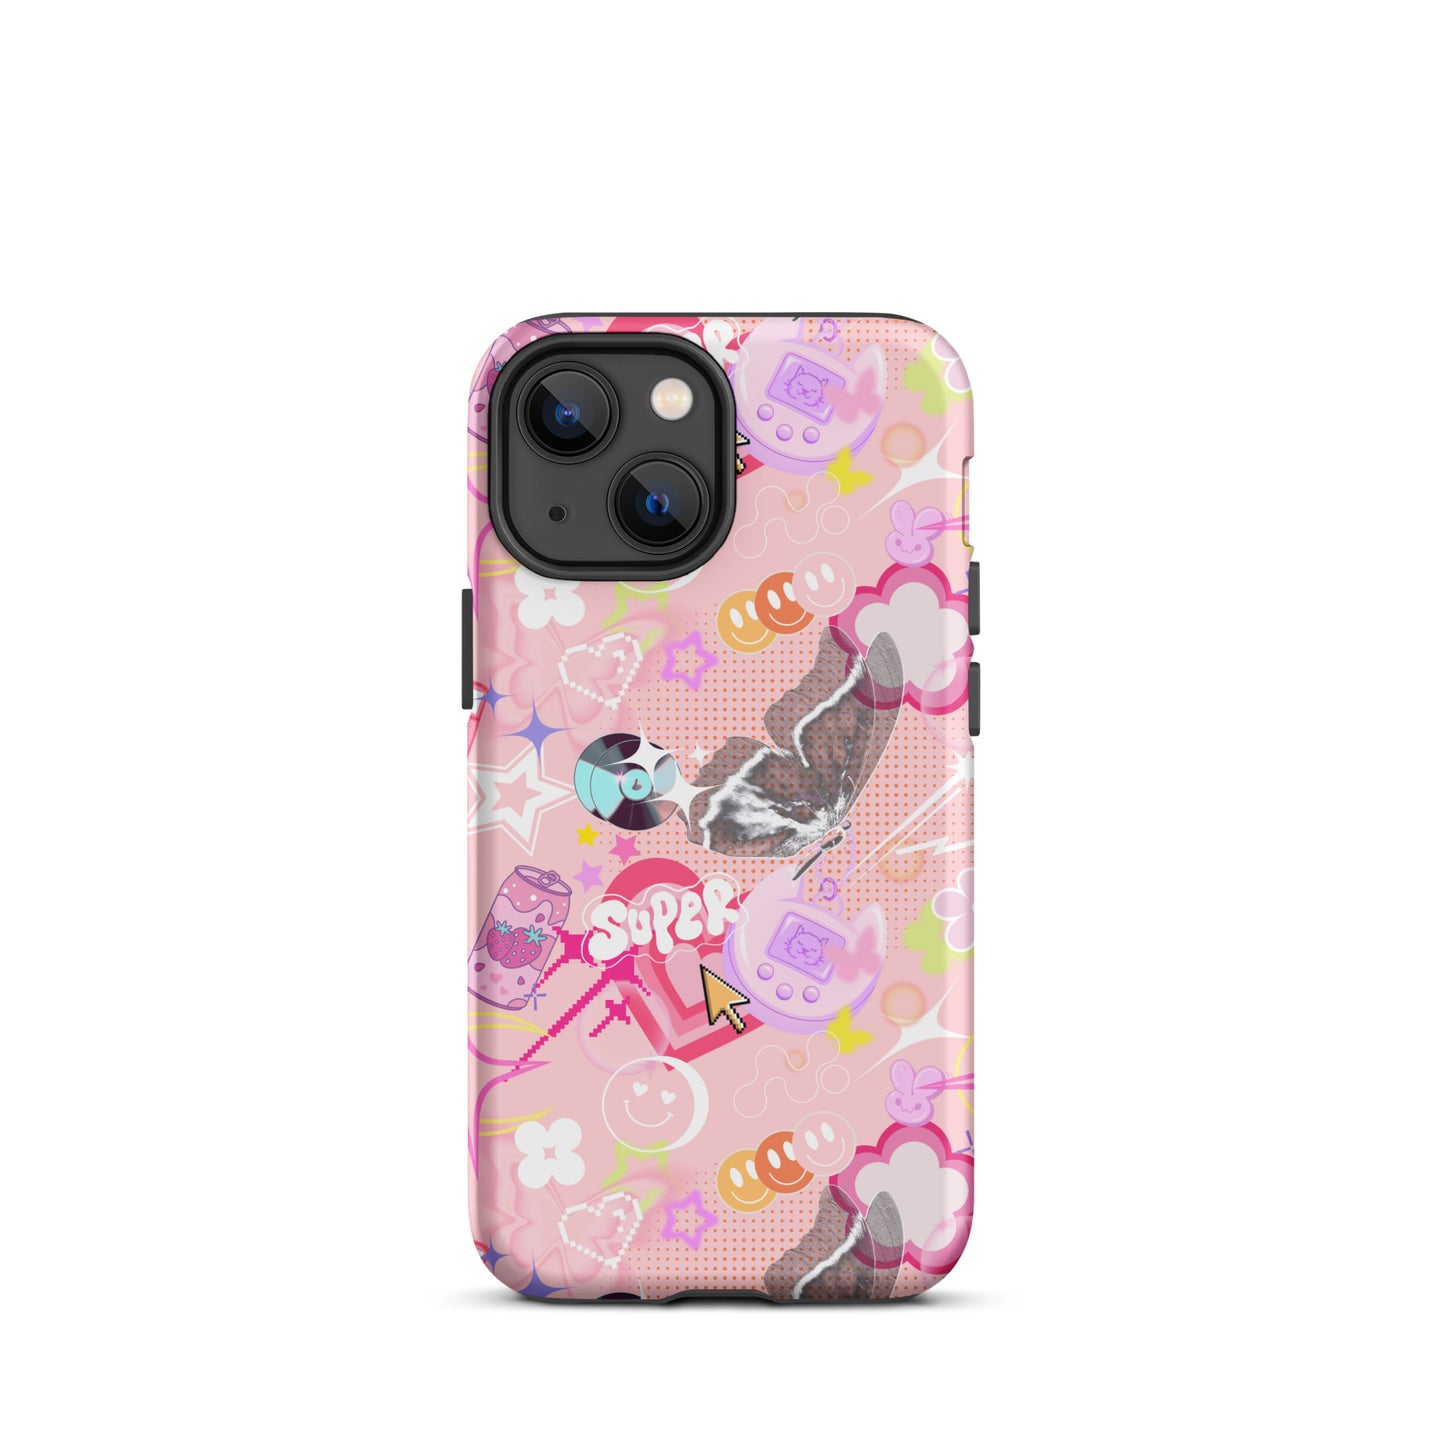 Y2K Pink Retro iPhone Case